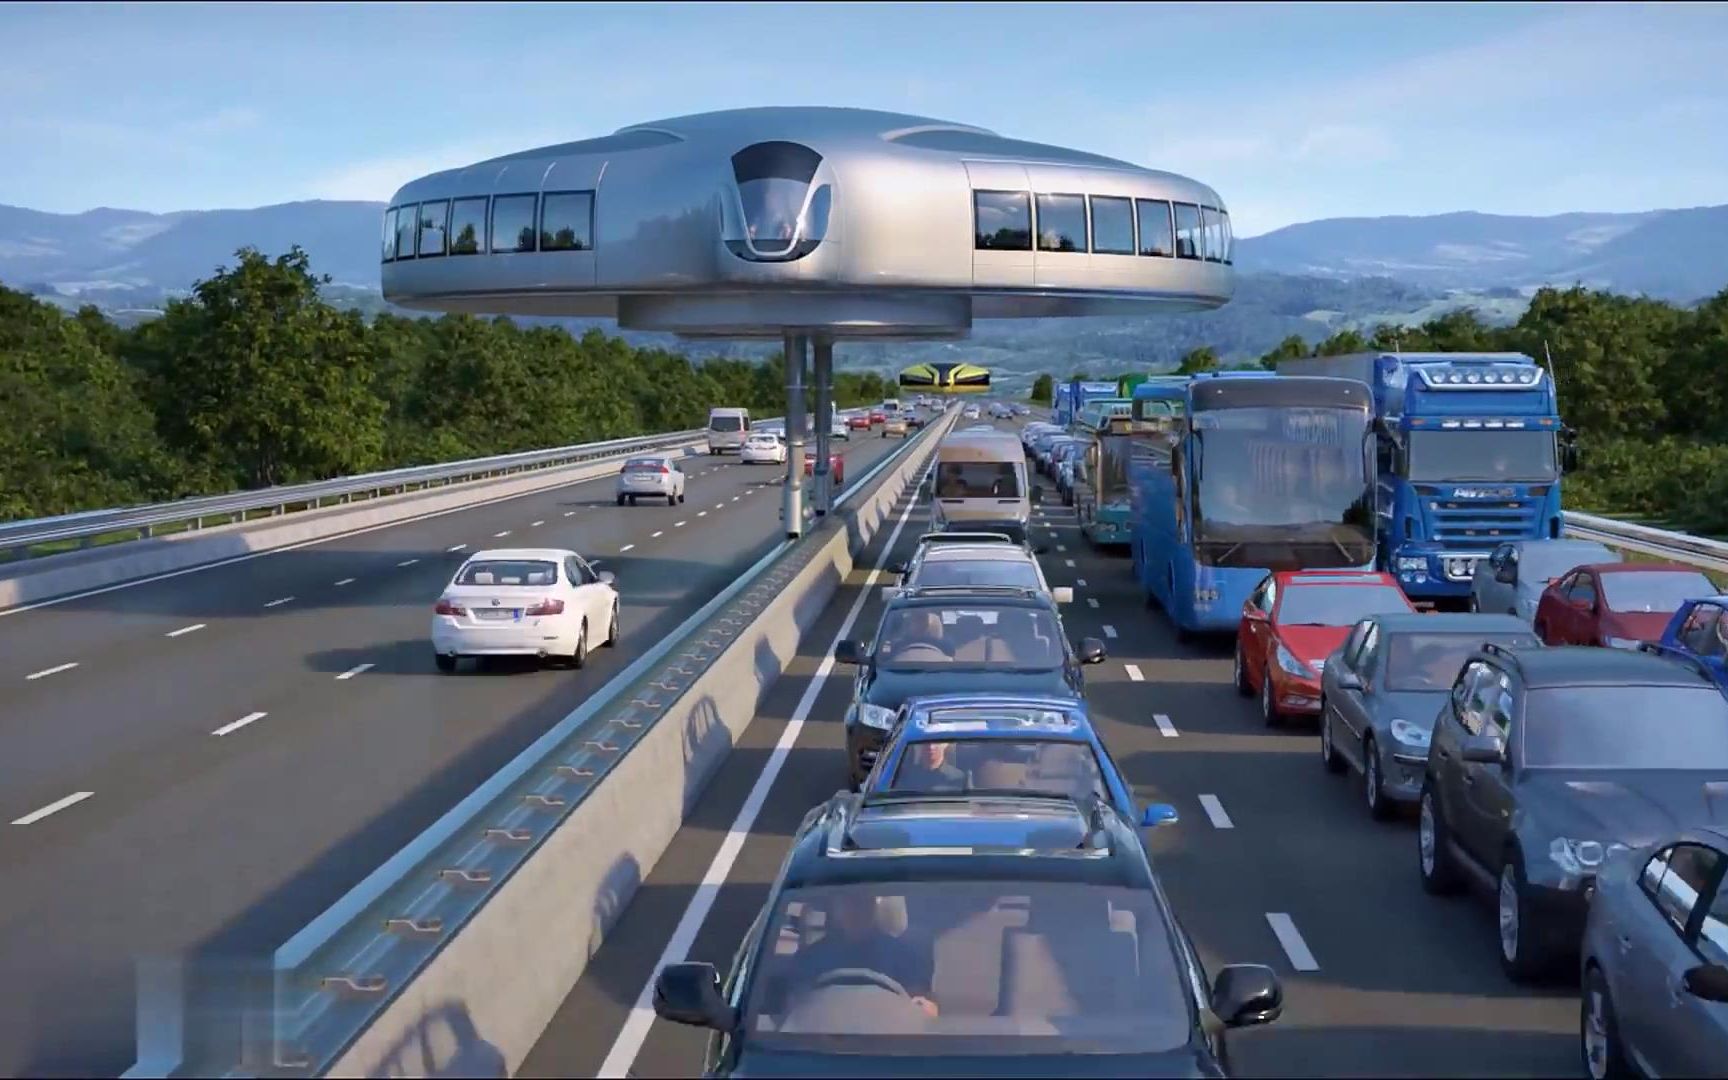 科技的进步速度惊人,未来空中地铁让交通更加便利,安全